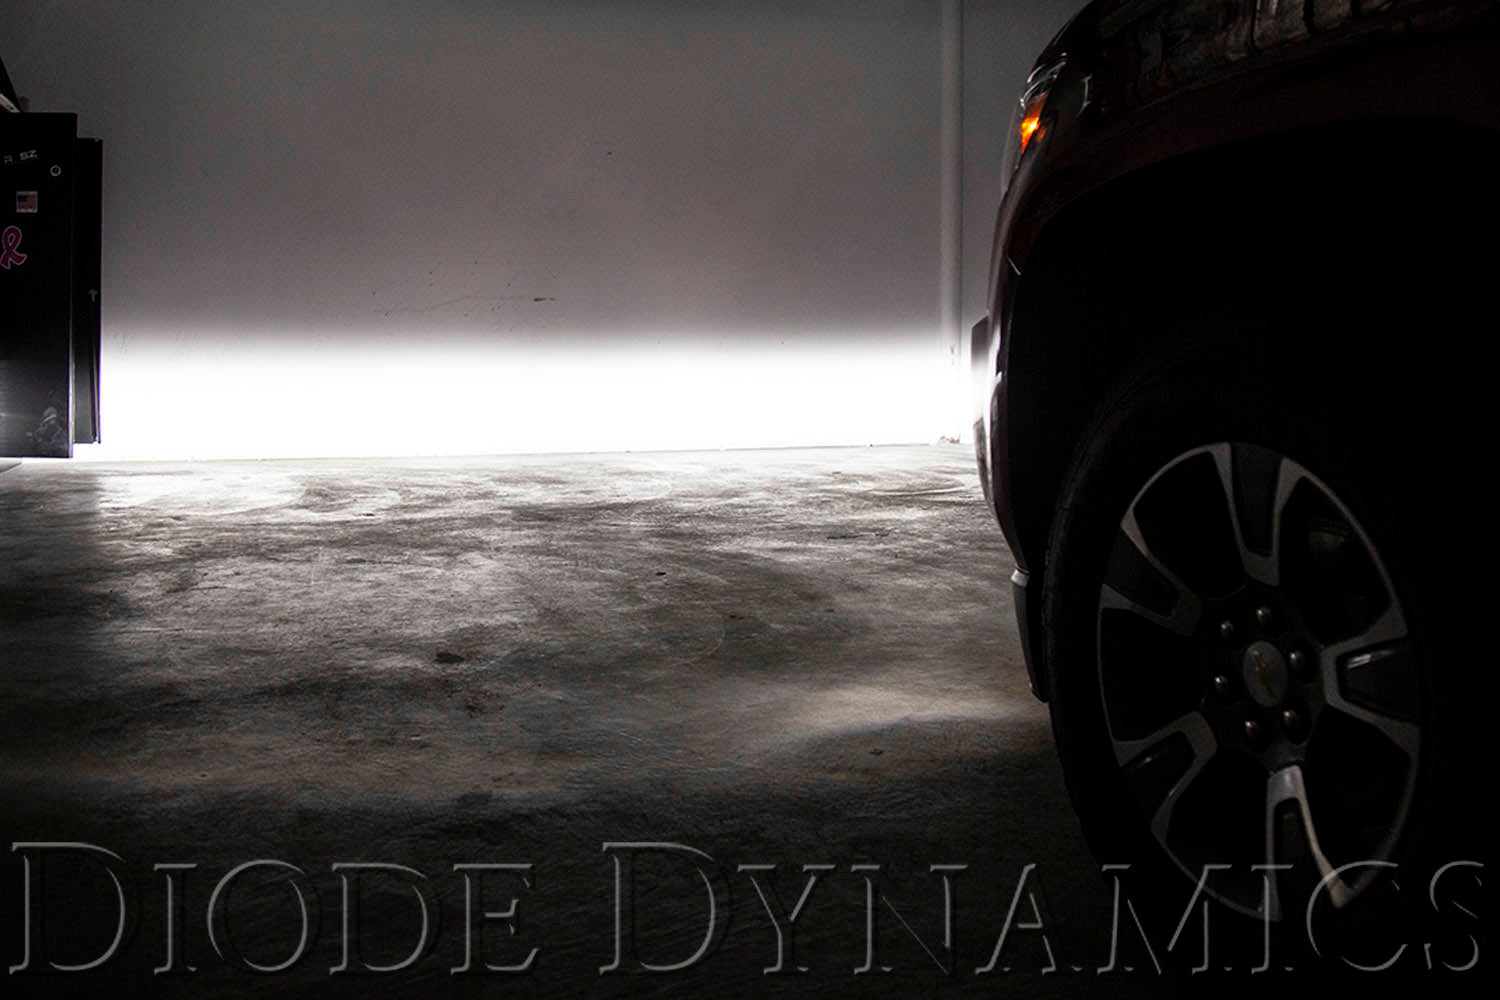 SS3 LED Fog Light Kit for 2007-2014 Chevrolet Tahoe White SAE/DOT Driving Pro Diode Dynamics